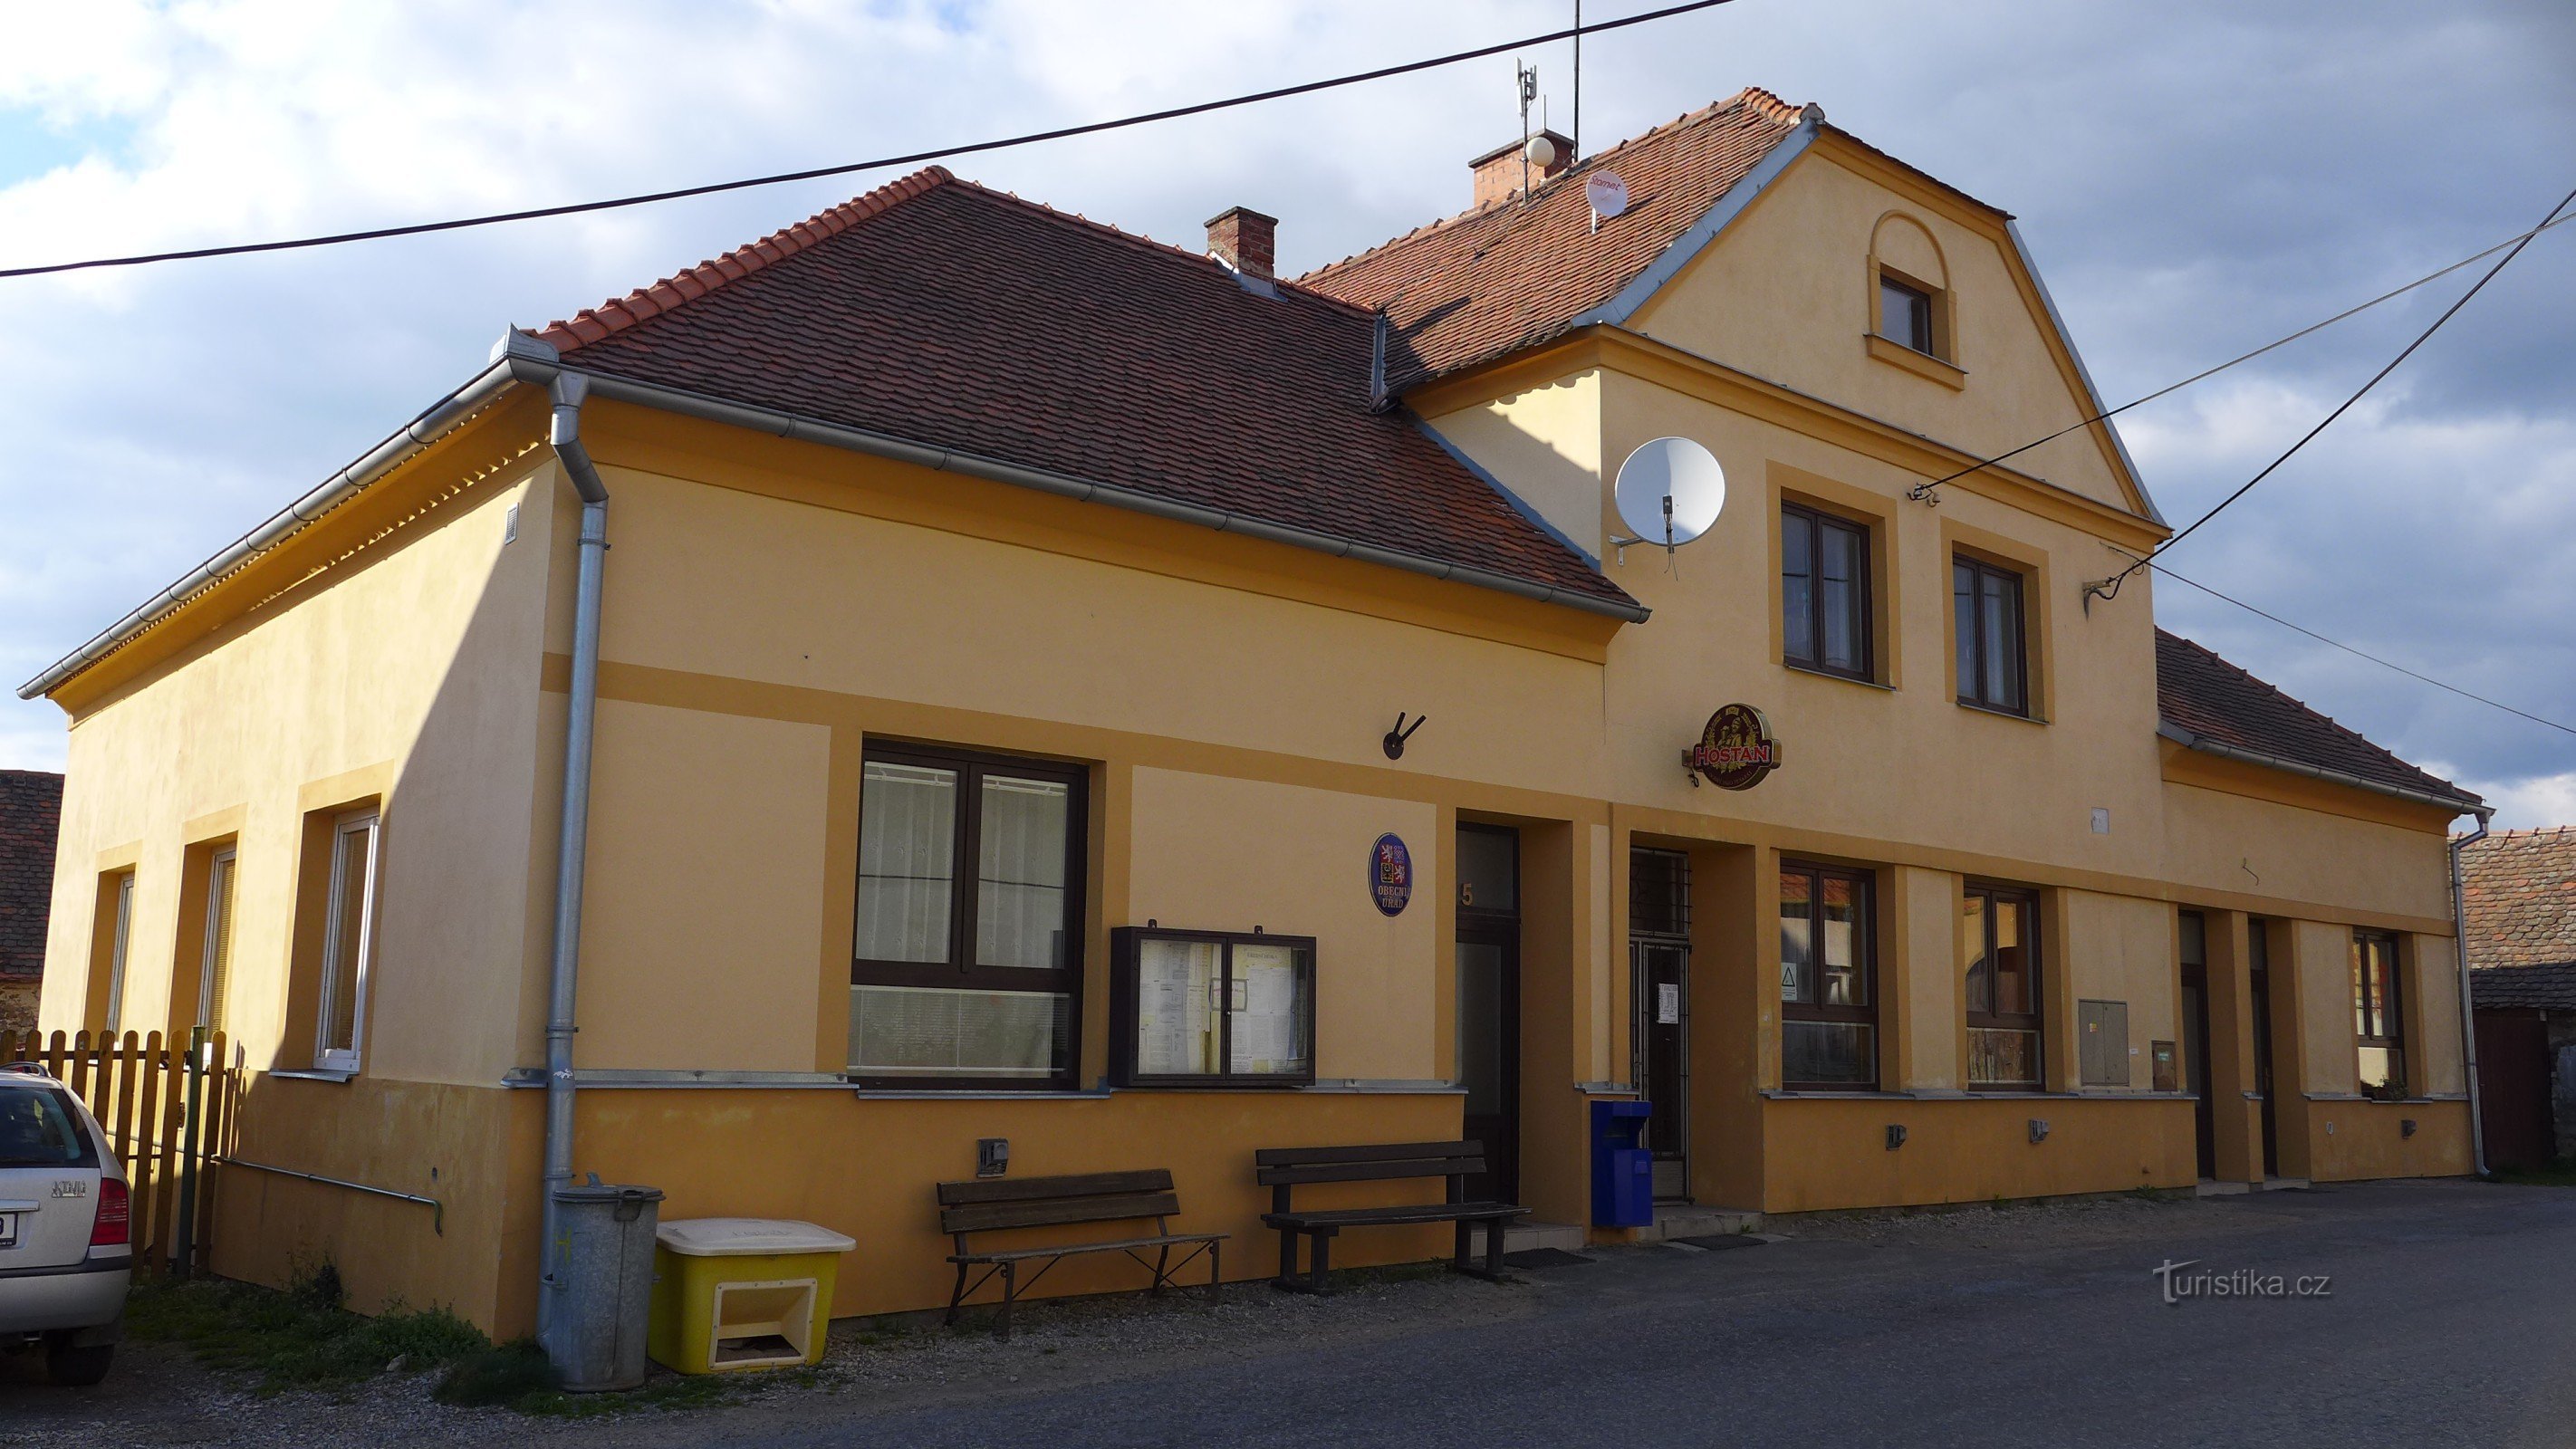 Újezd ​​- kommunkontor och restaurang